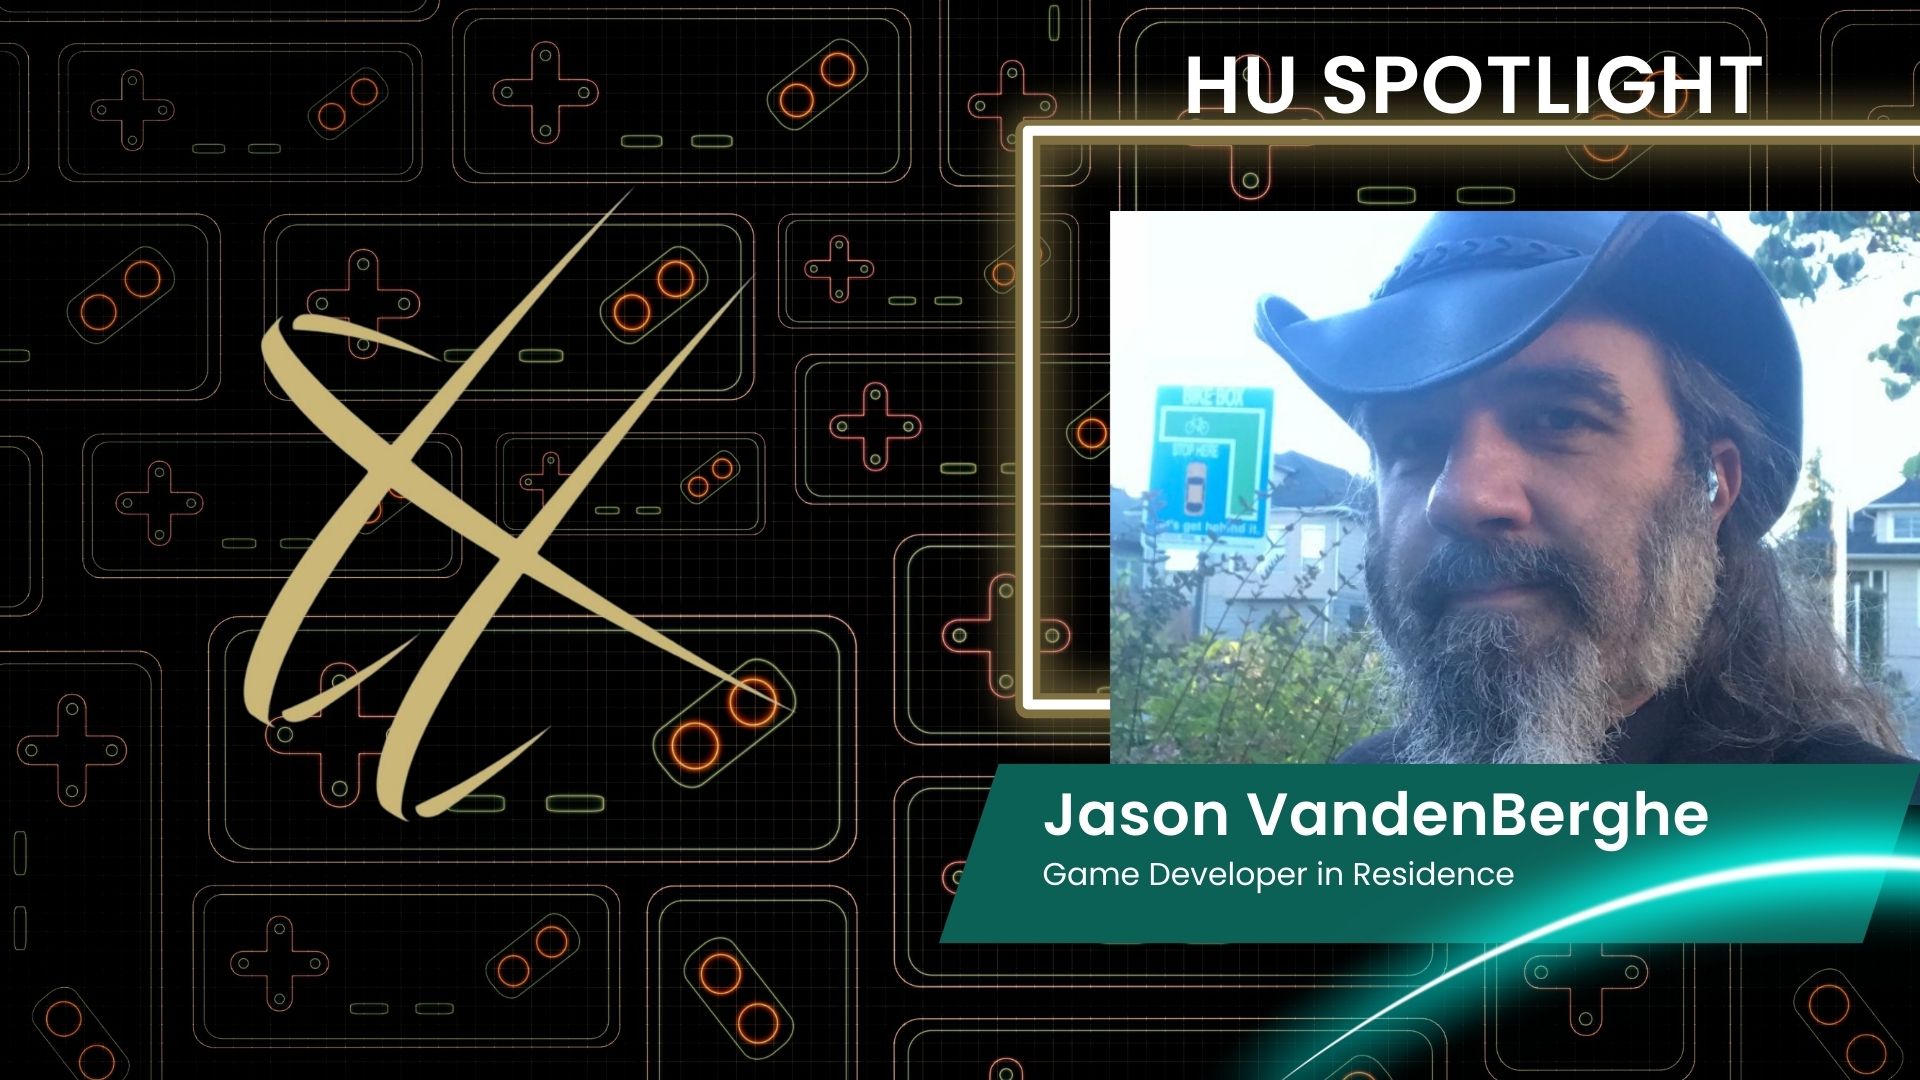 HU Spotlight: Jason VandenBerghe, Game Developer in Residence